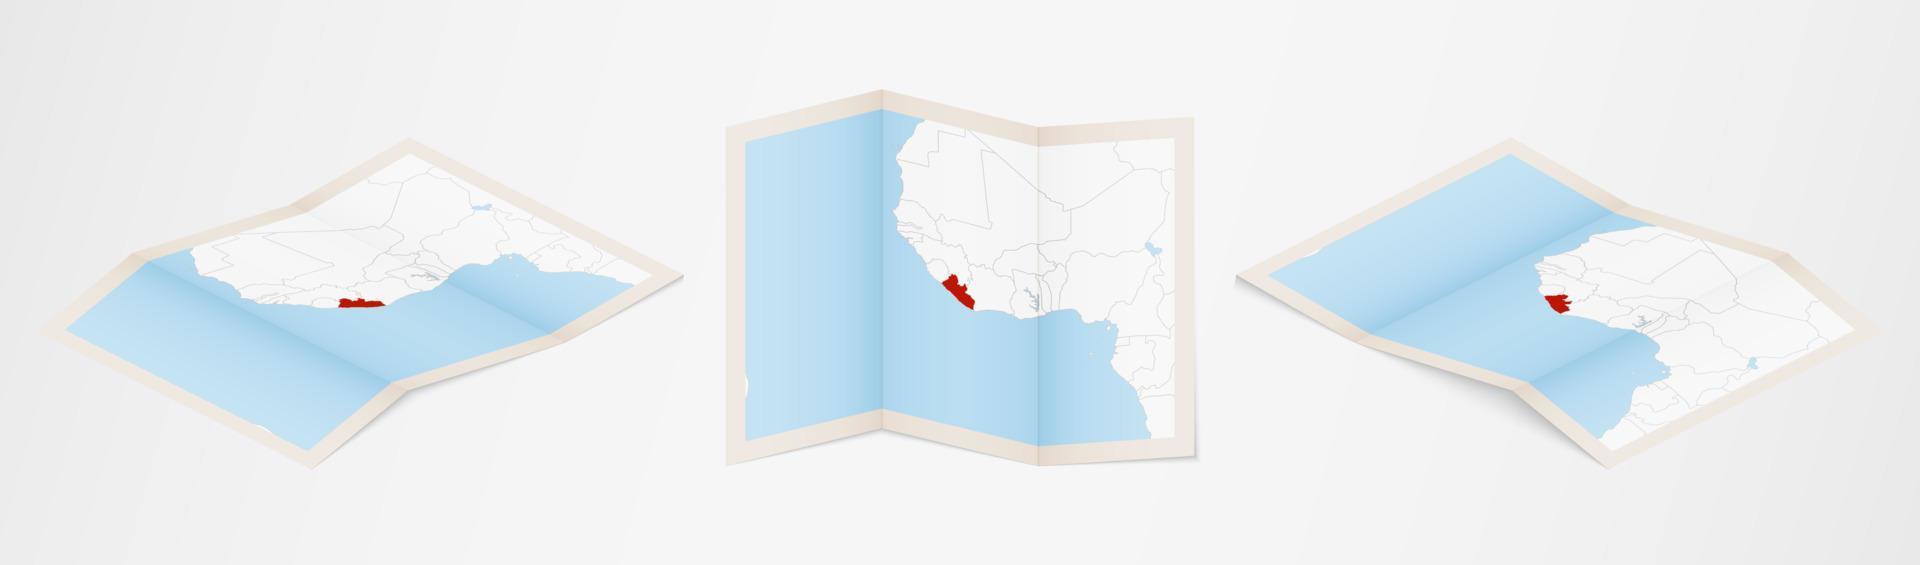 mapa plegado de liberia en tres versiones diferentes. vector